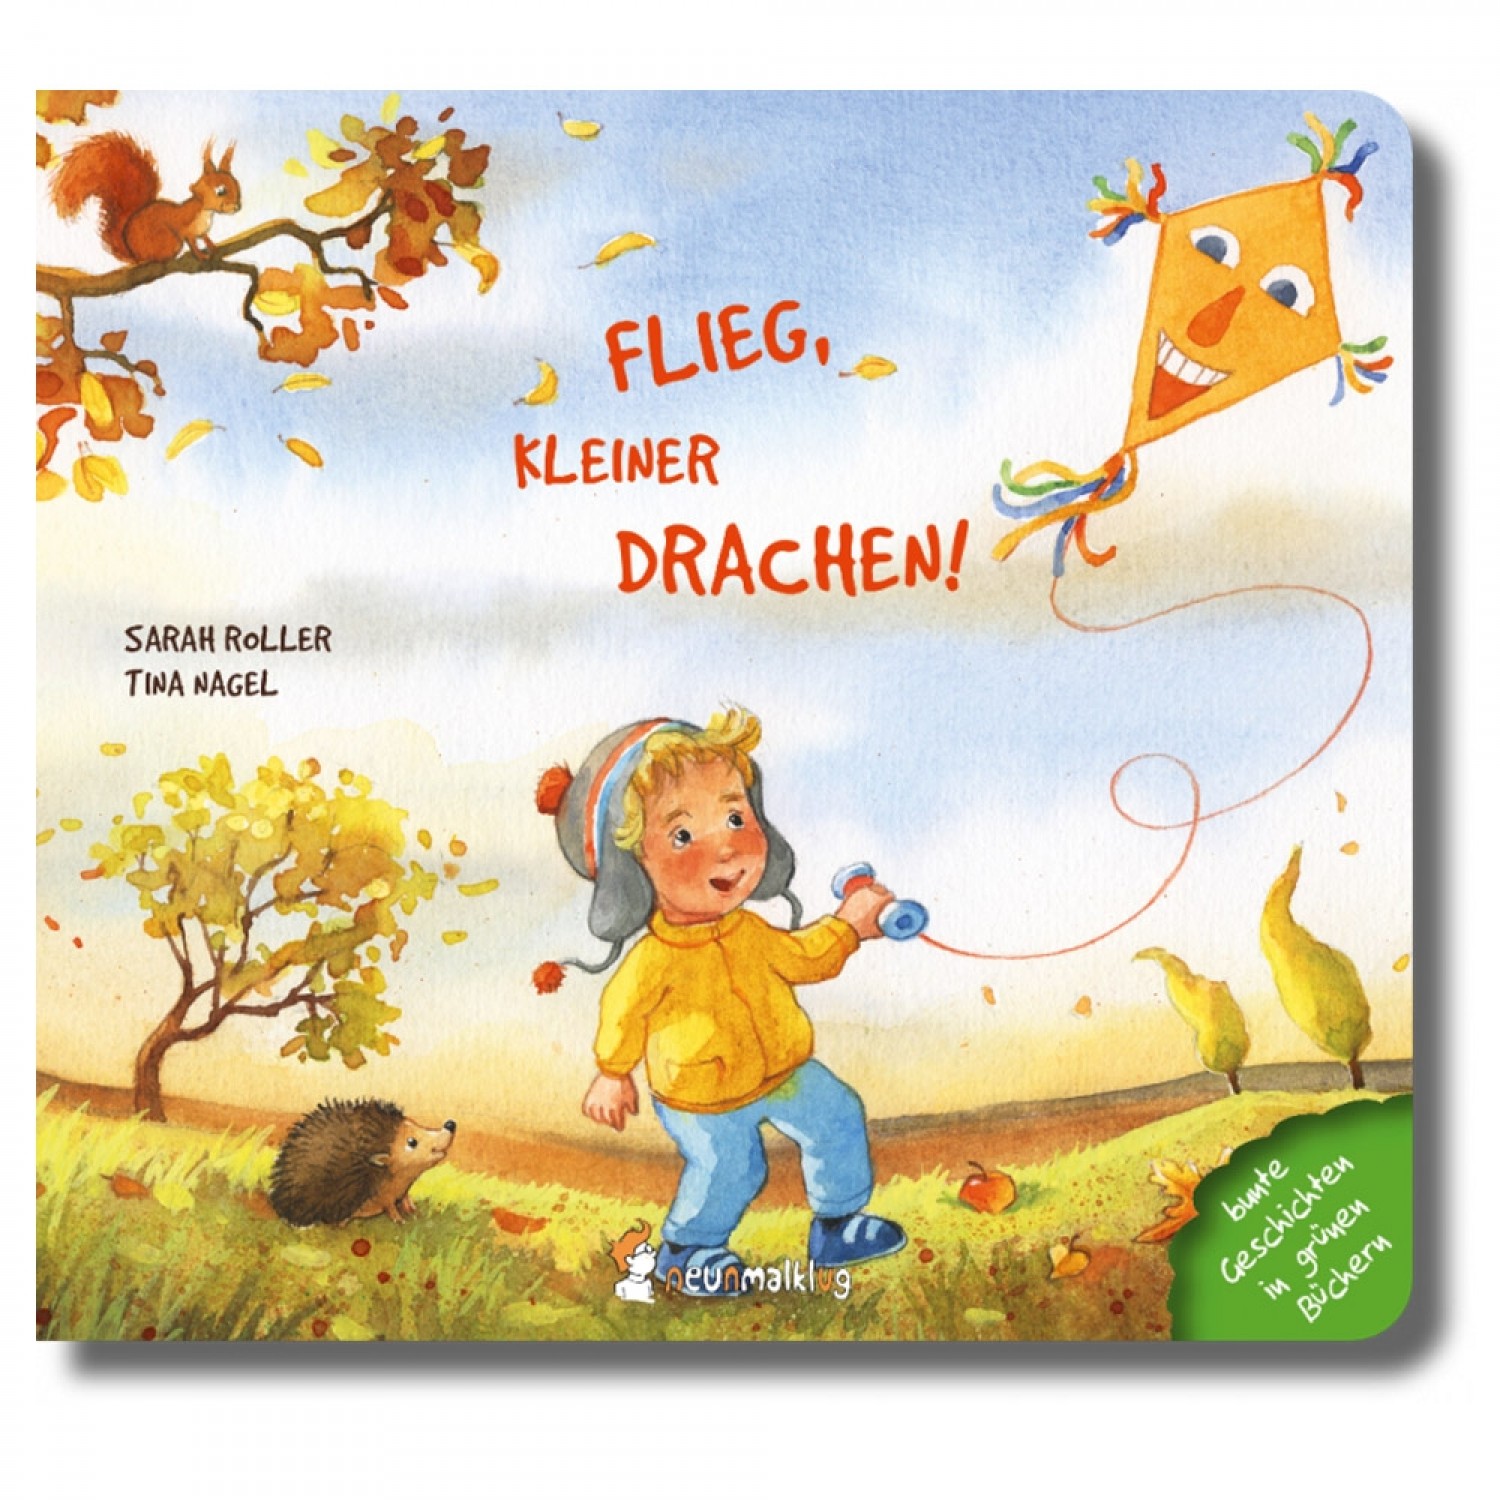 Flieg, kleiner Drachen! - Pappbilderbuch | neunmalklug Verlag